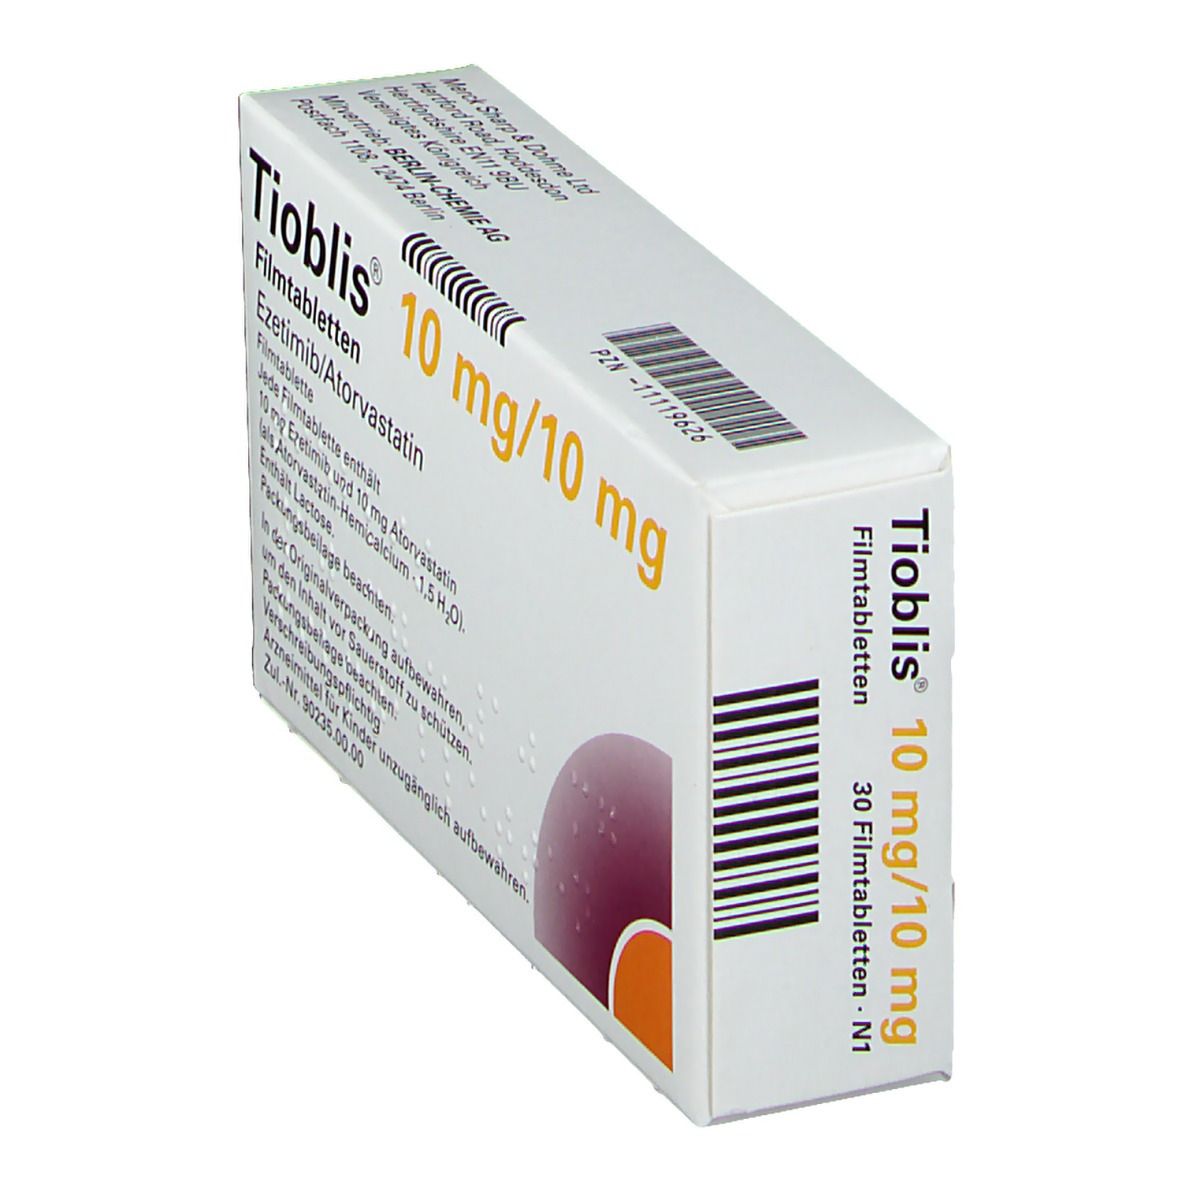 Tioblis® 10 mg/10 mg